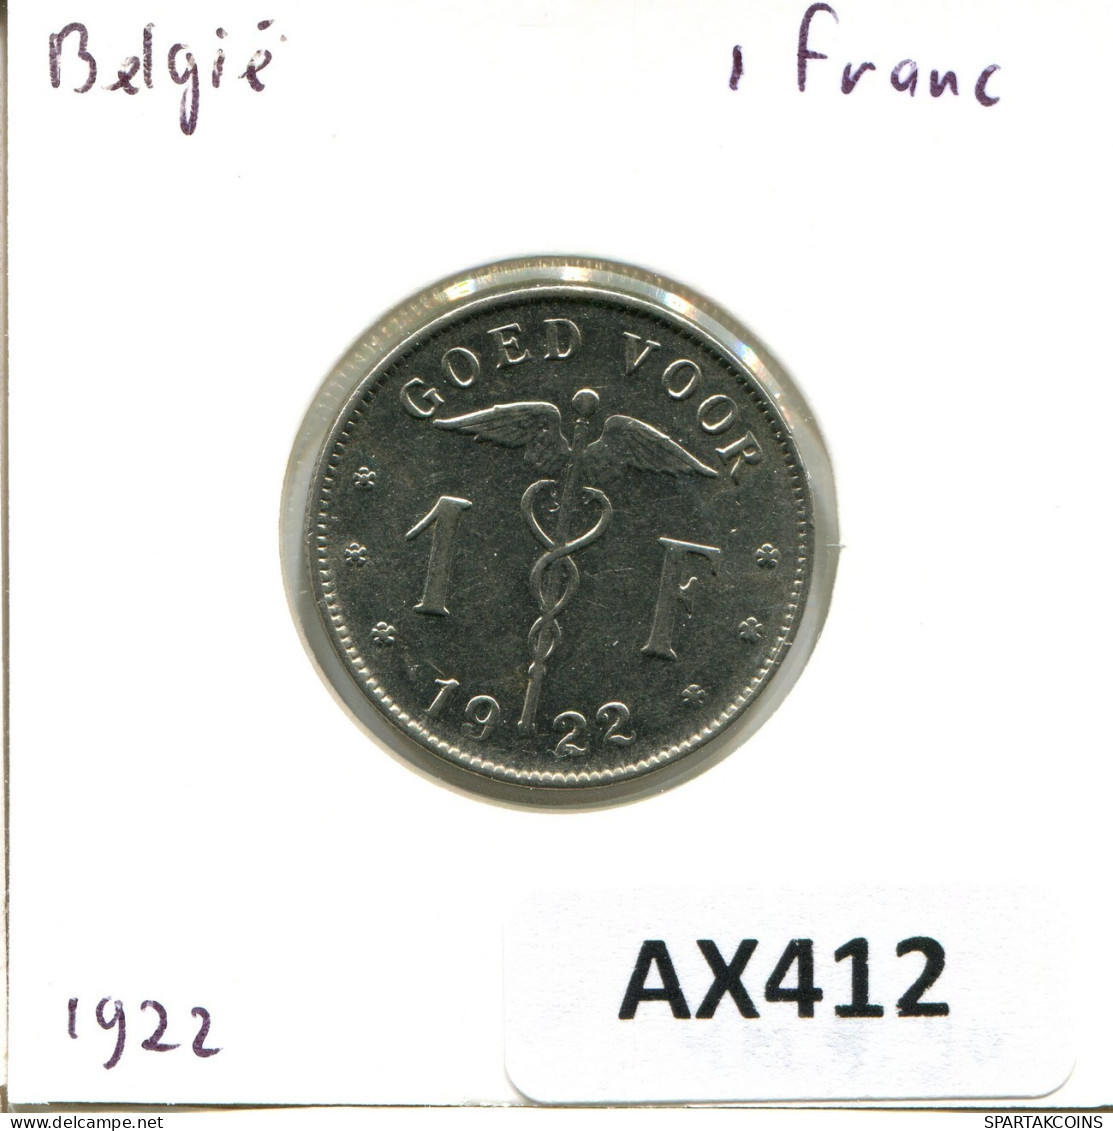 1 FRANC 1922 BELGIQUE BELGIUM Pièce DUTCH Text #AX412.F.A - 1 Franco